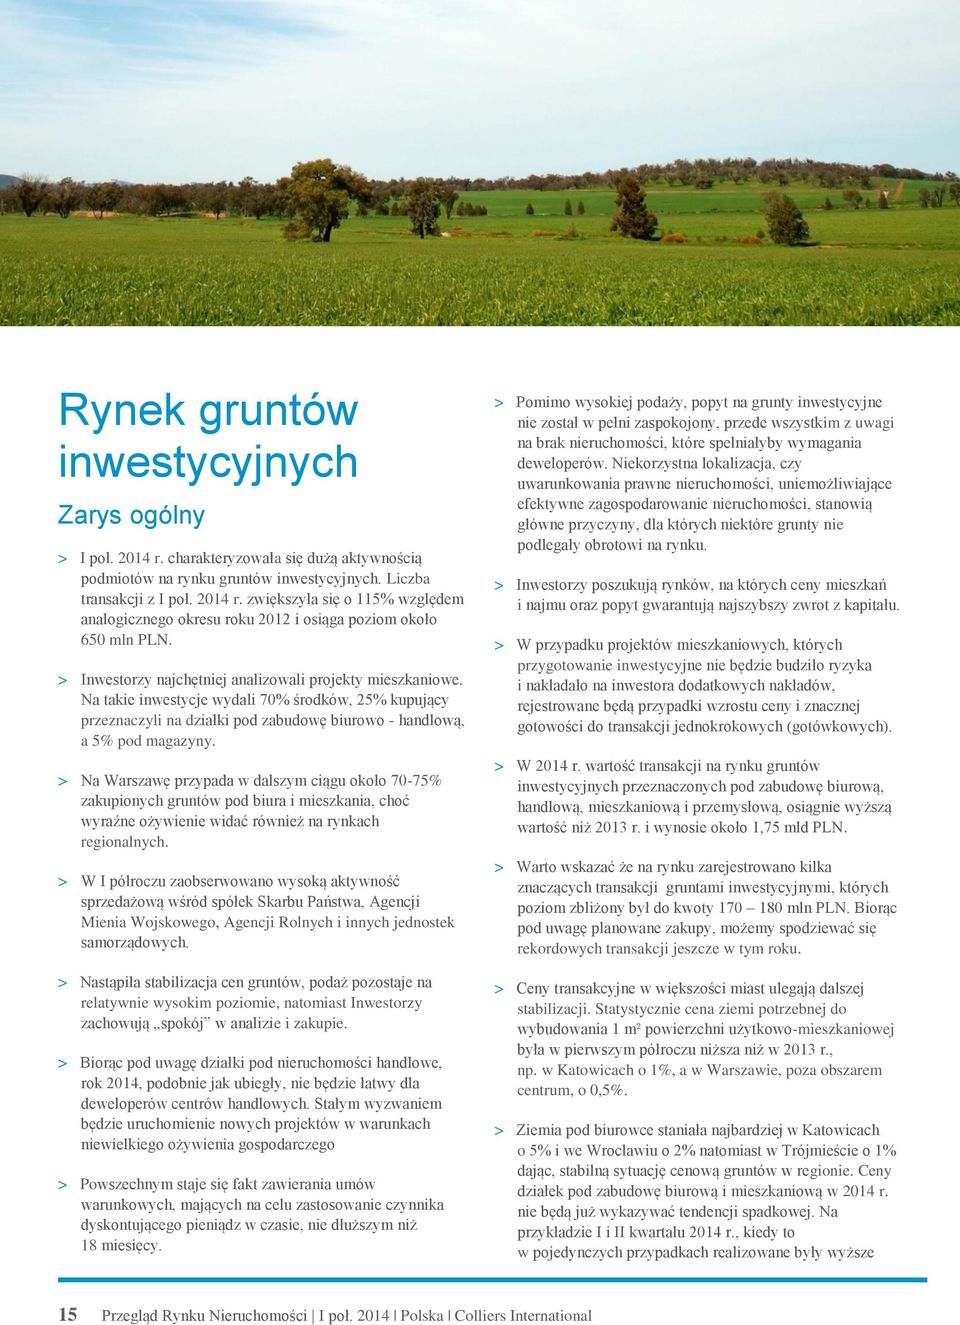 > Na Warszawę przypada w dalszym ciągu około 70-75% zakupionych gruntów pod biura i mieszkania, choć wyraźne ożywienie widać również na rynkach regionalnych.